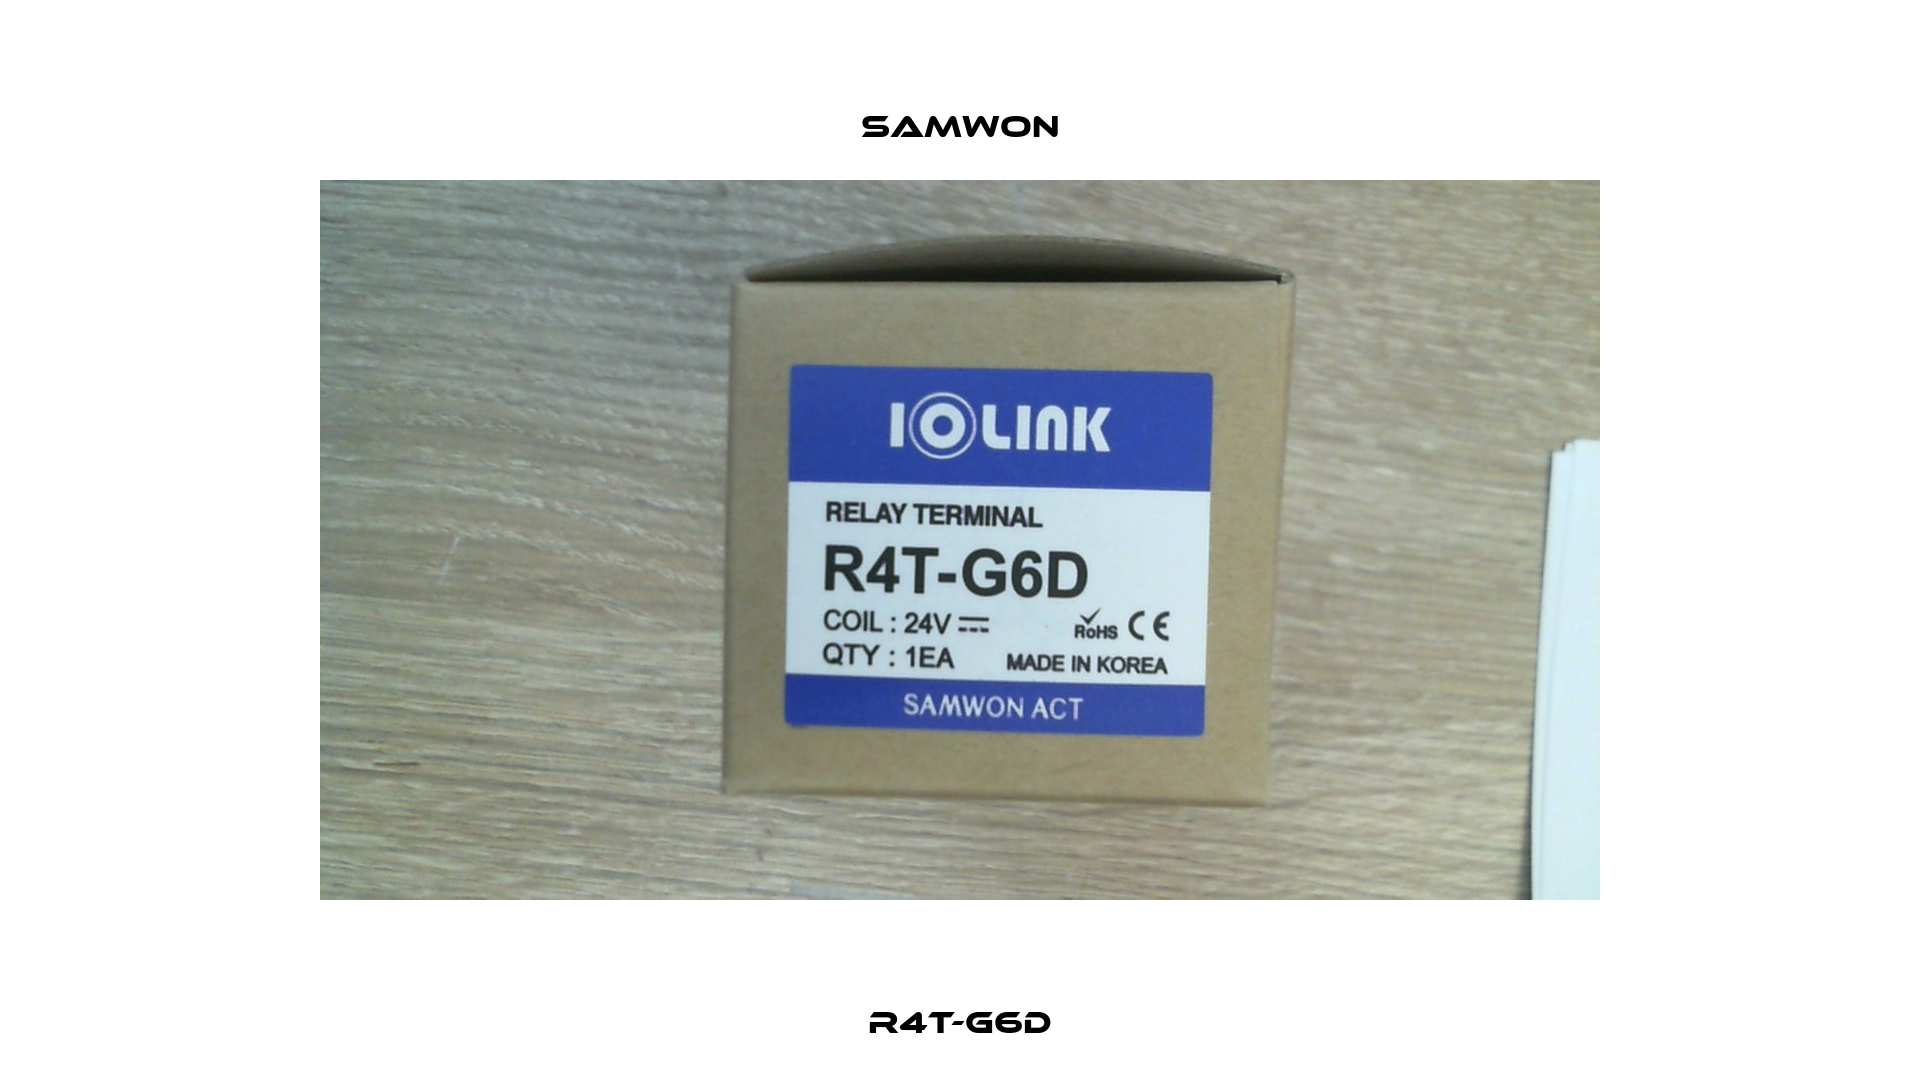 R4T-G6D Samwon